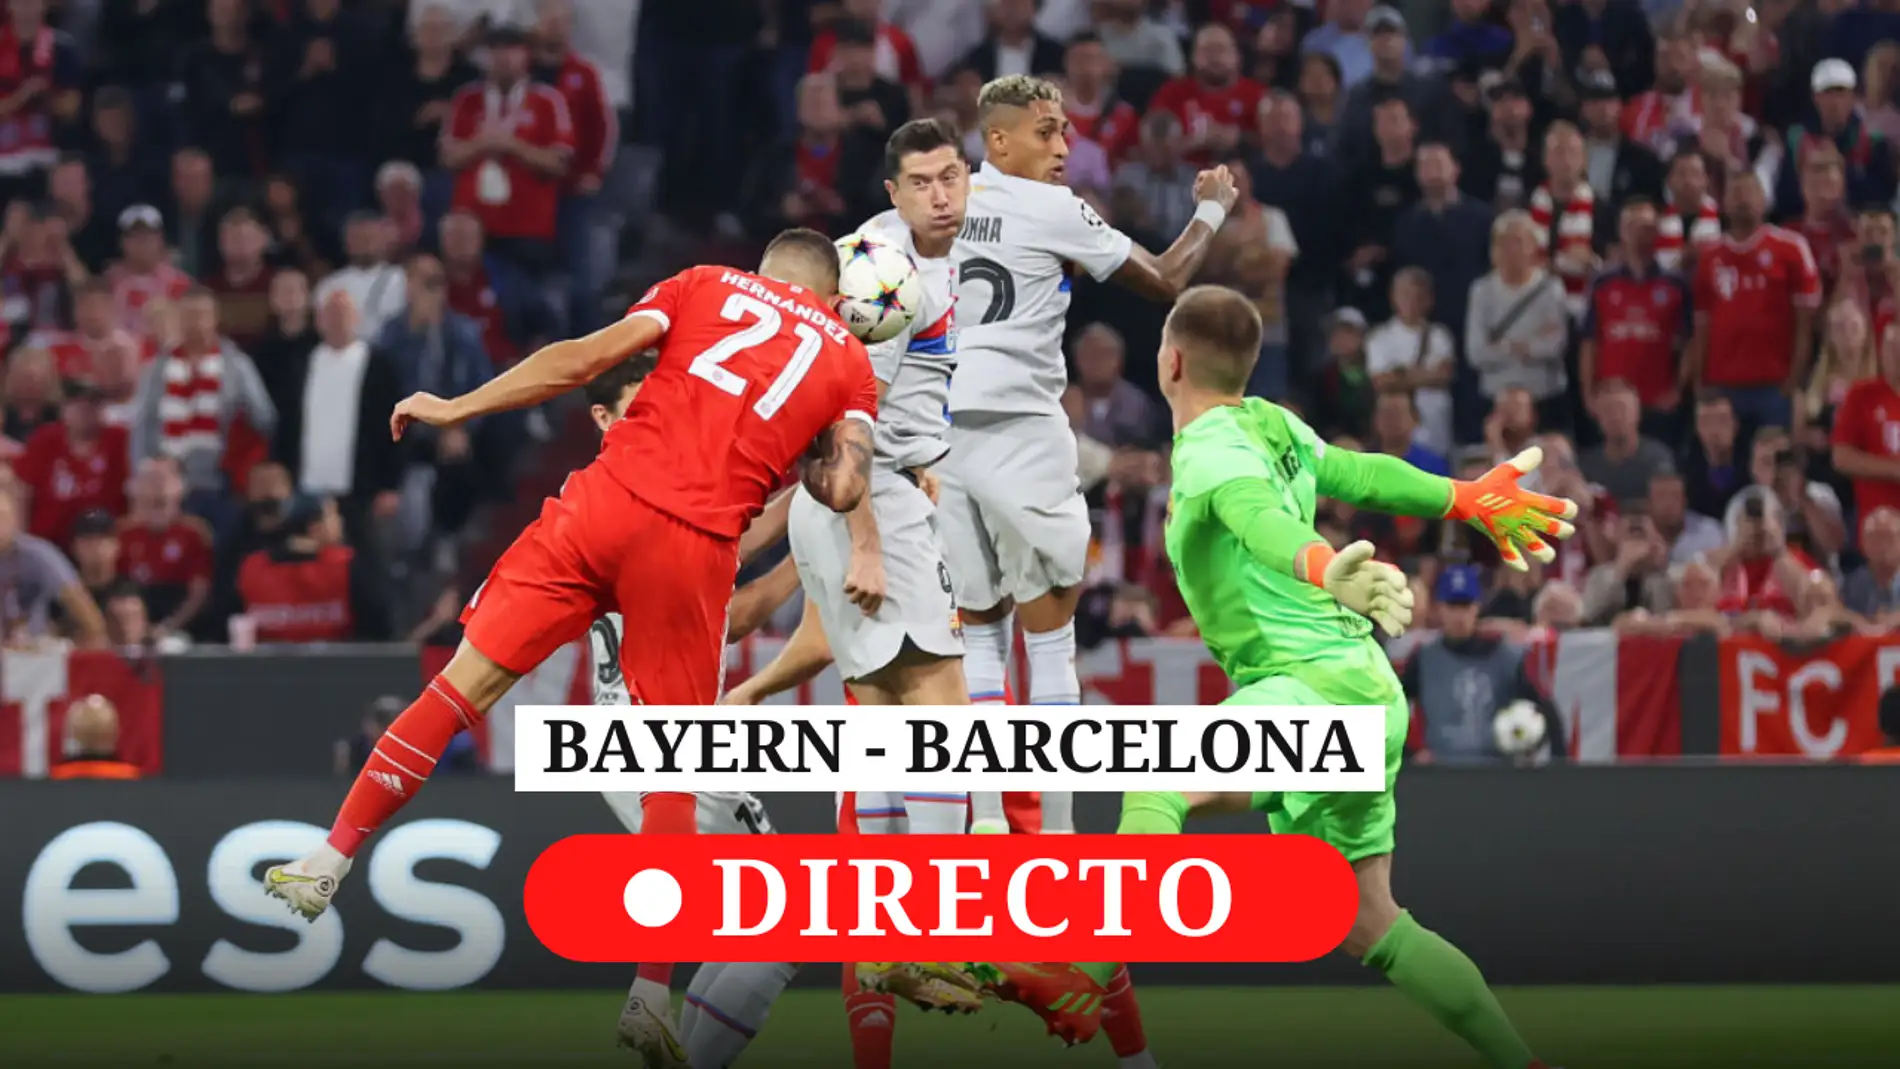 Bayern - Barcelona: resultado hoy, análisis y del partido de Champions | Onda Cero